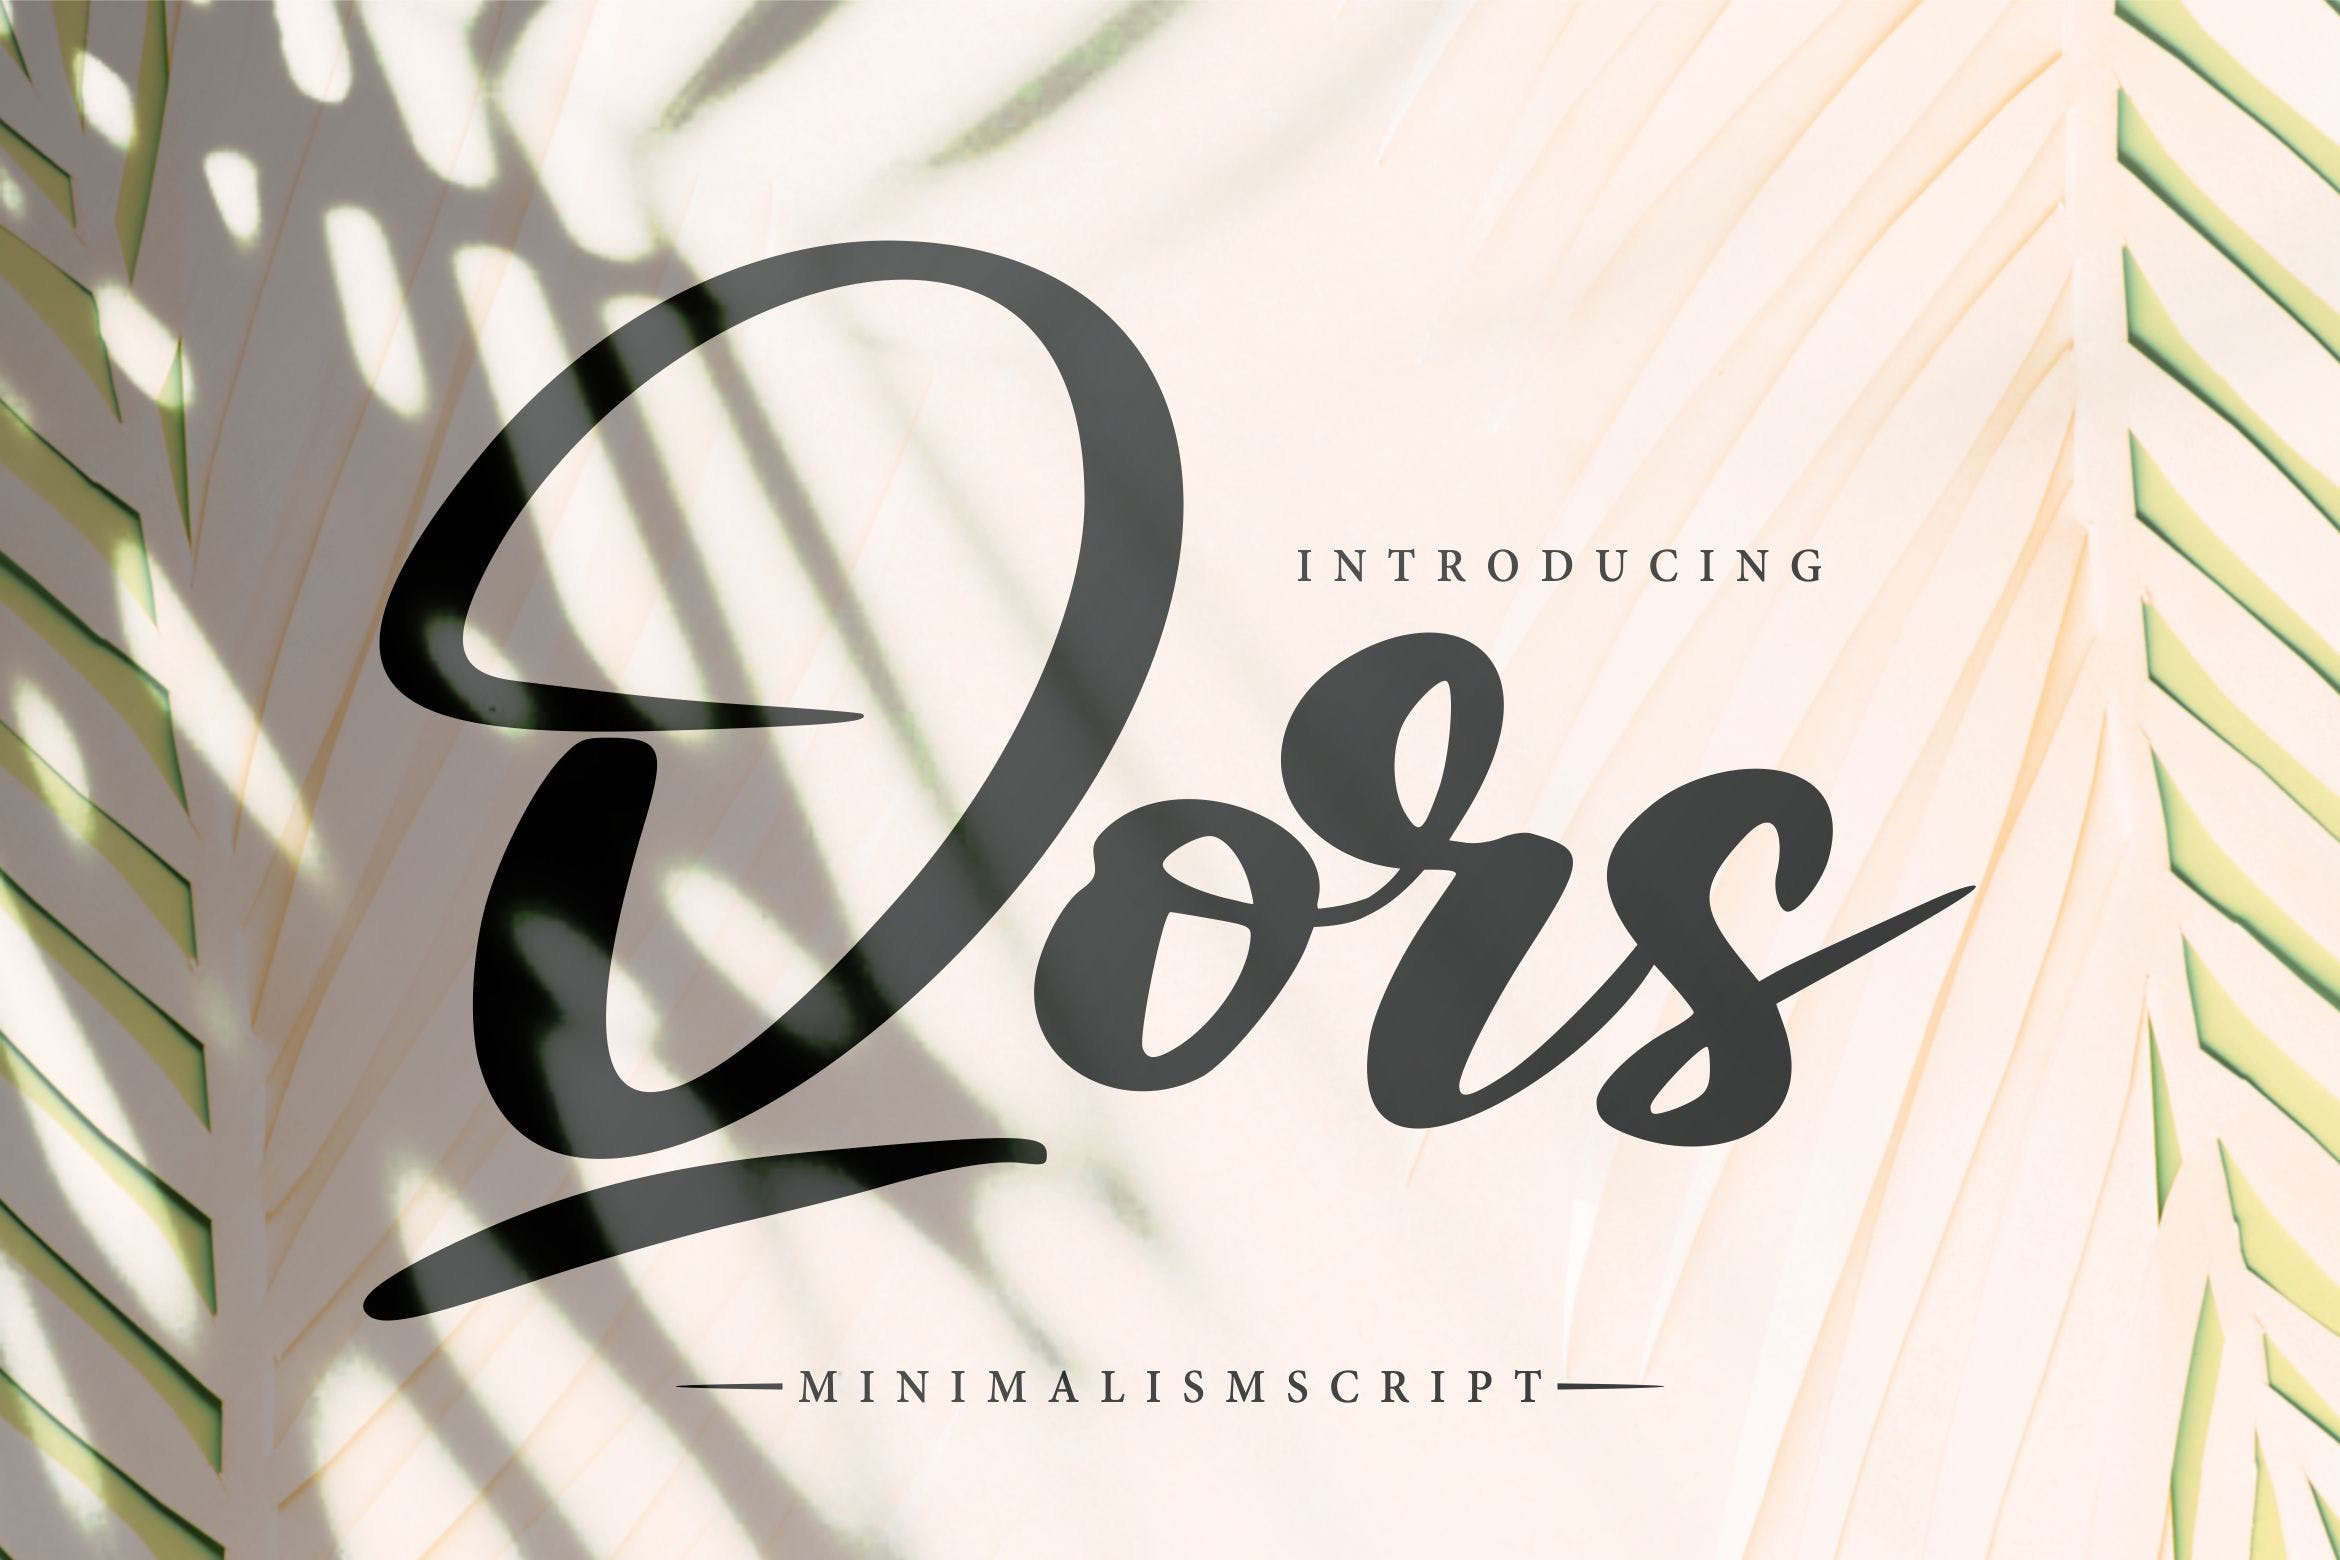 极简主义排版设计风格英文书法字体16图库精选 Qors | Minimalism Script Font插图